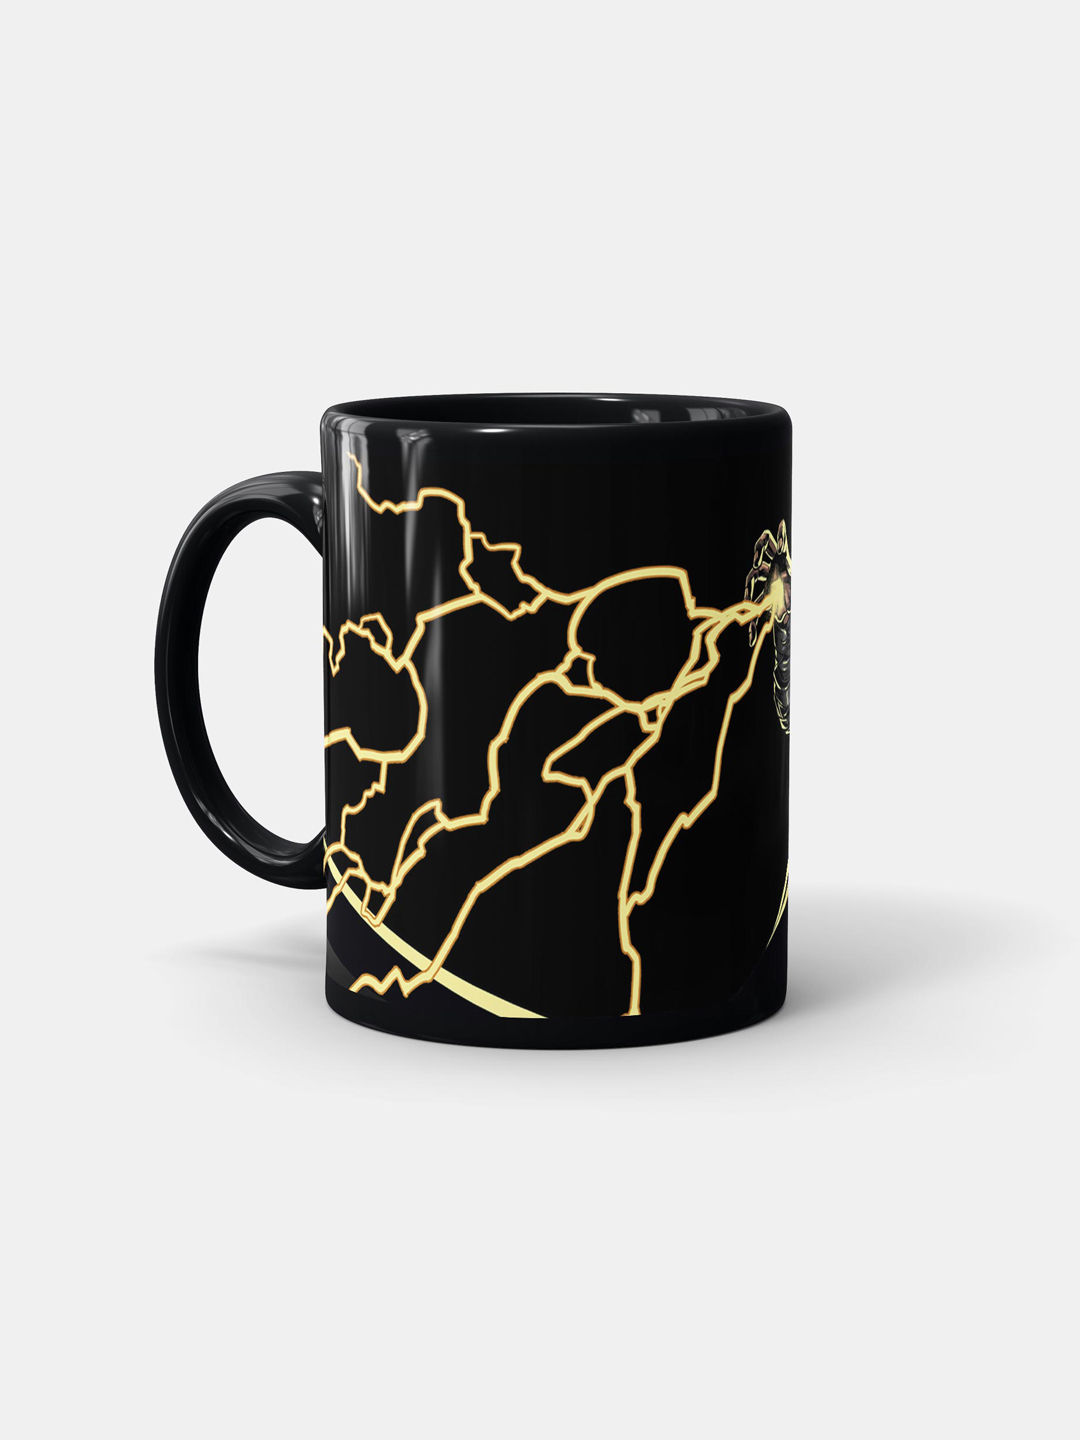 Buy Black Energy Release - Coffee Mugs Black Coffee Mugs Online